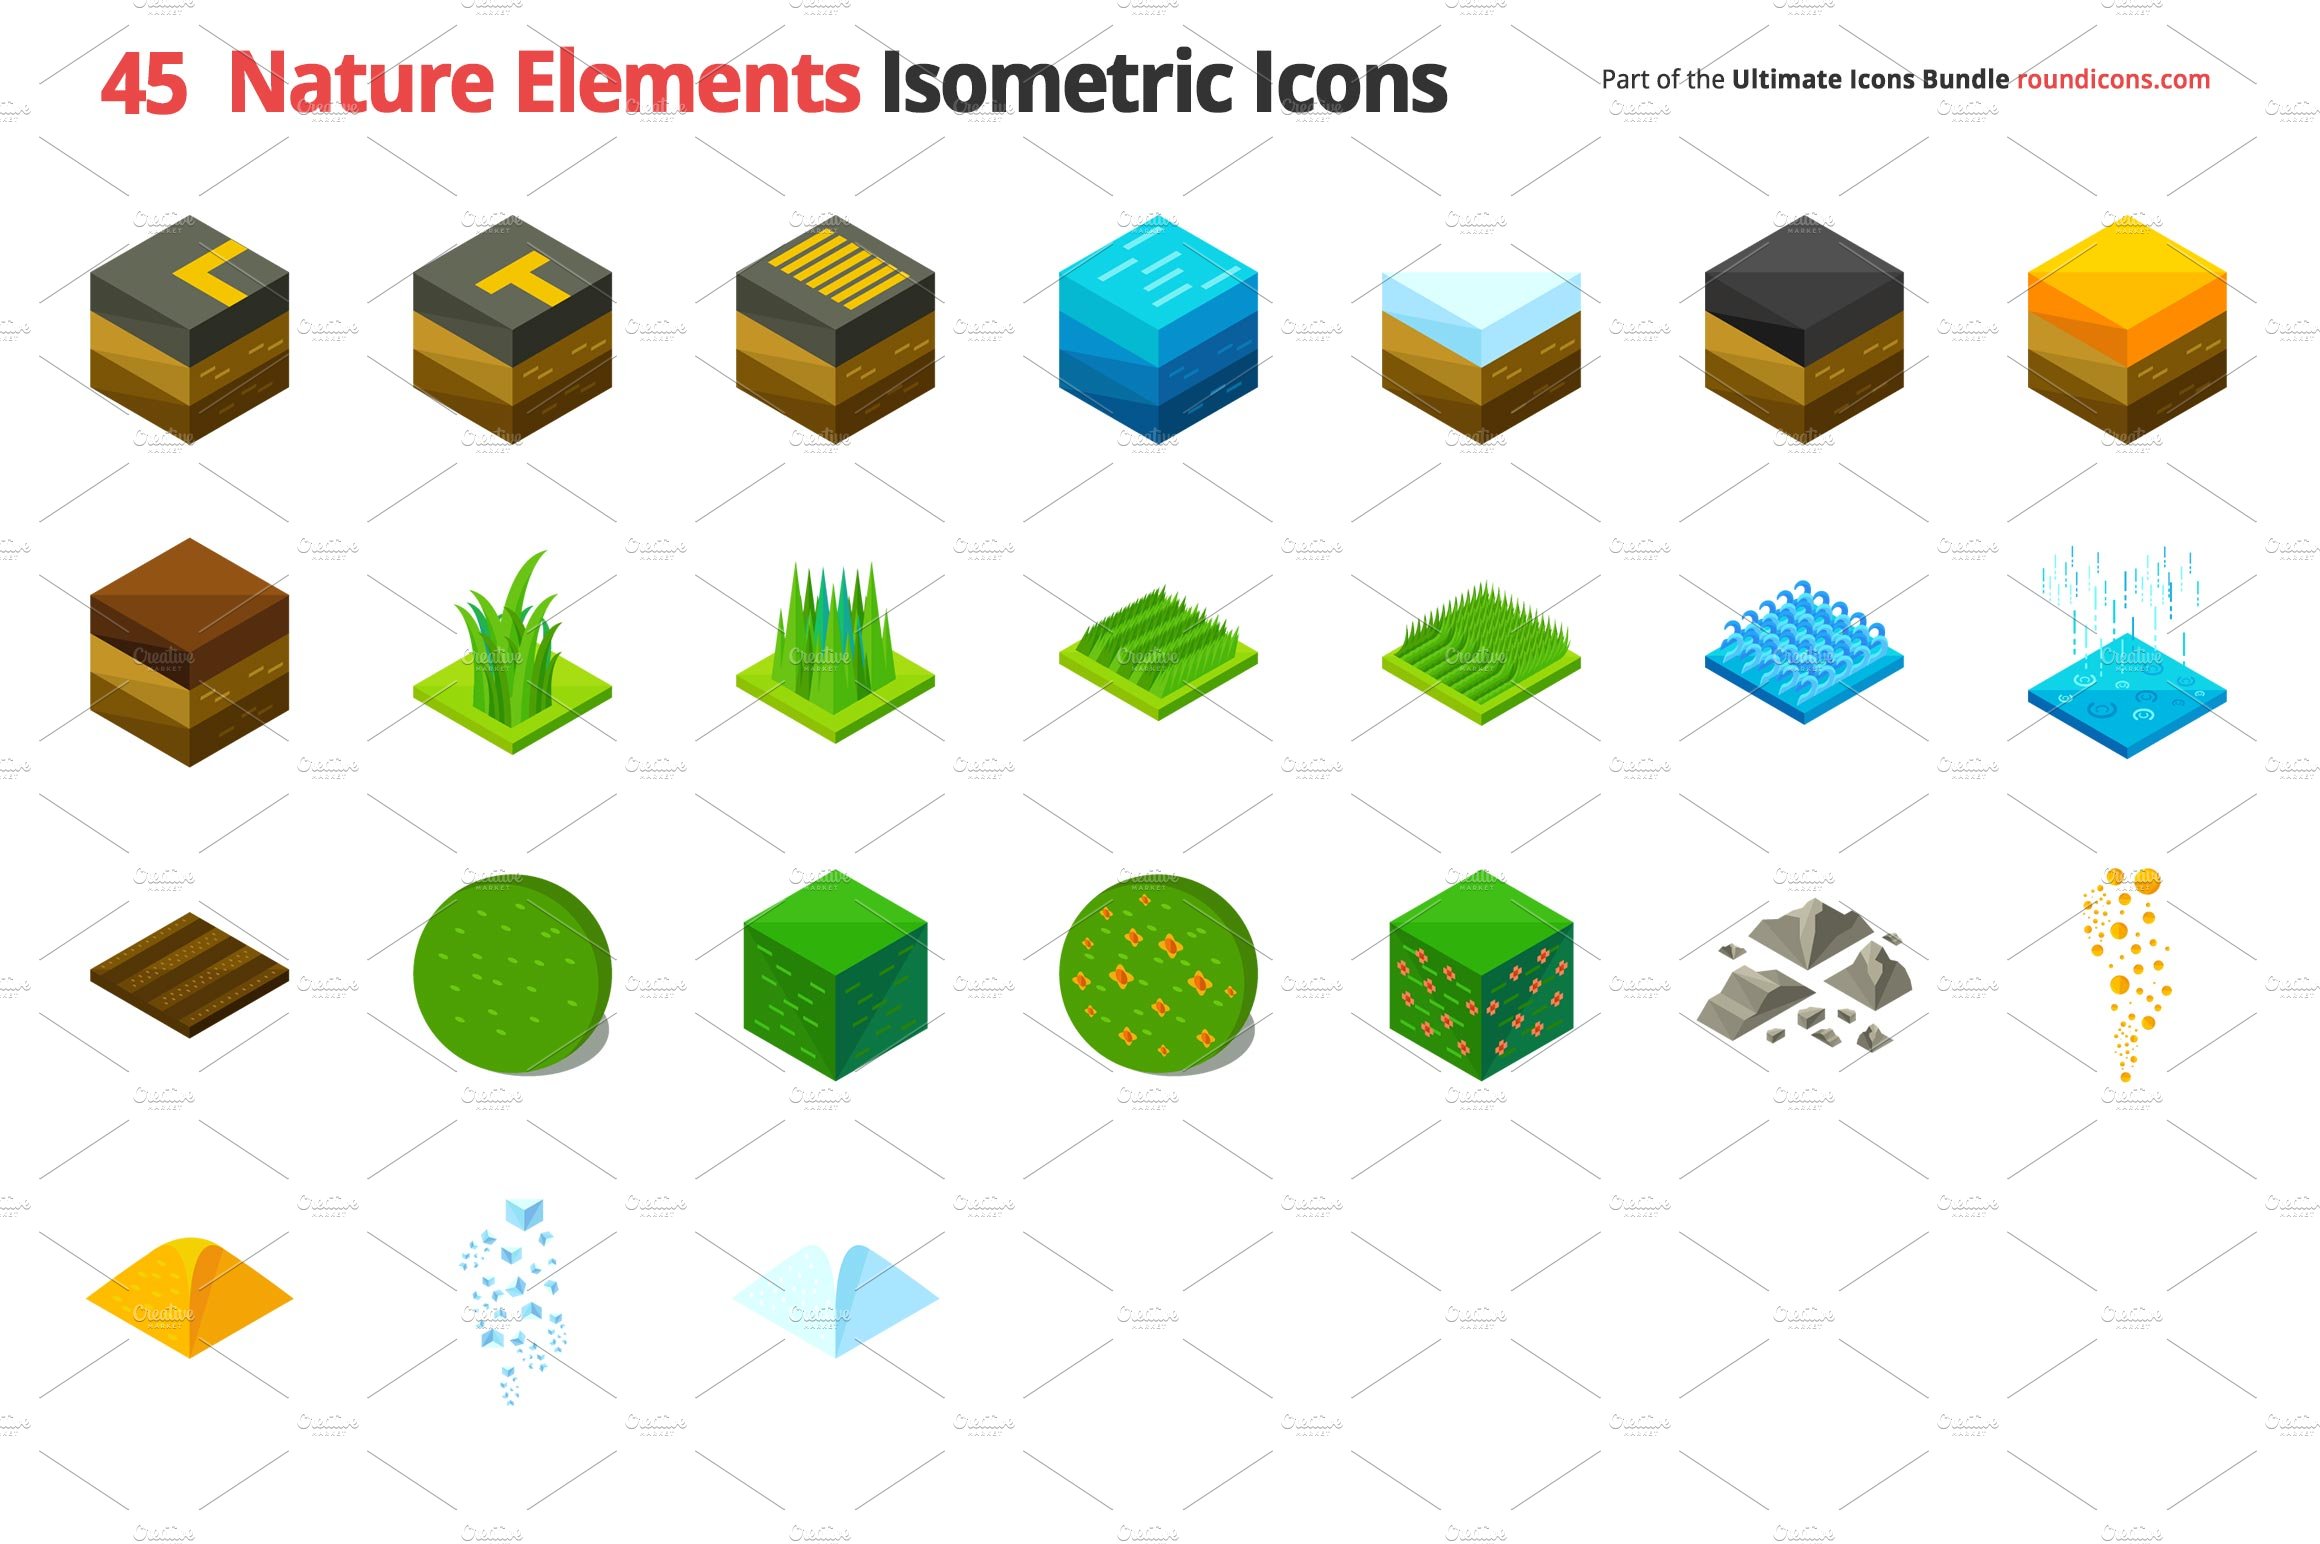 nature elements isometric icons slide 1 273